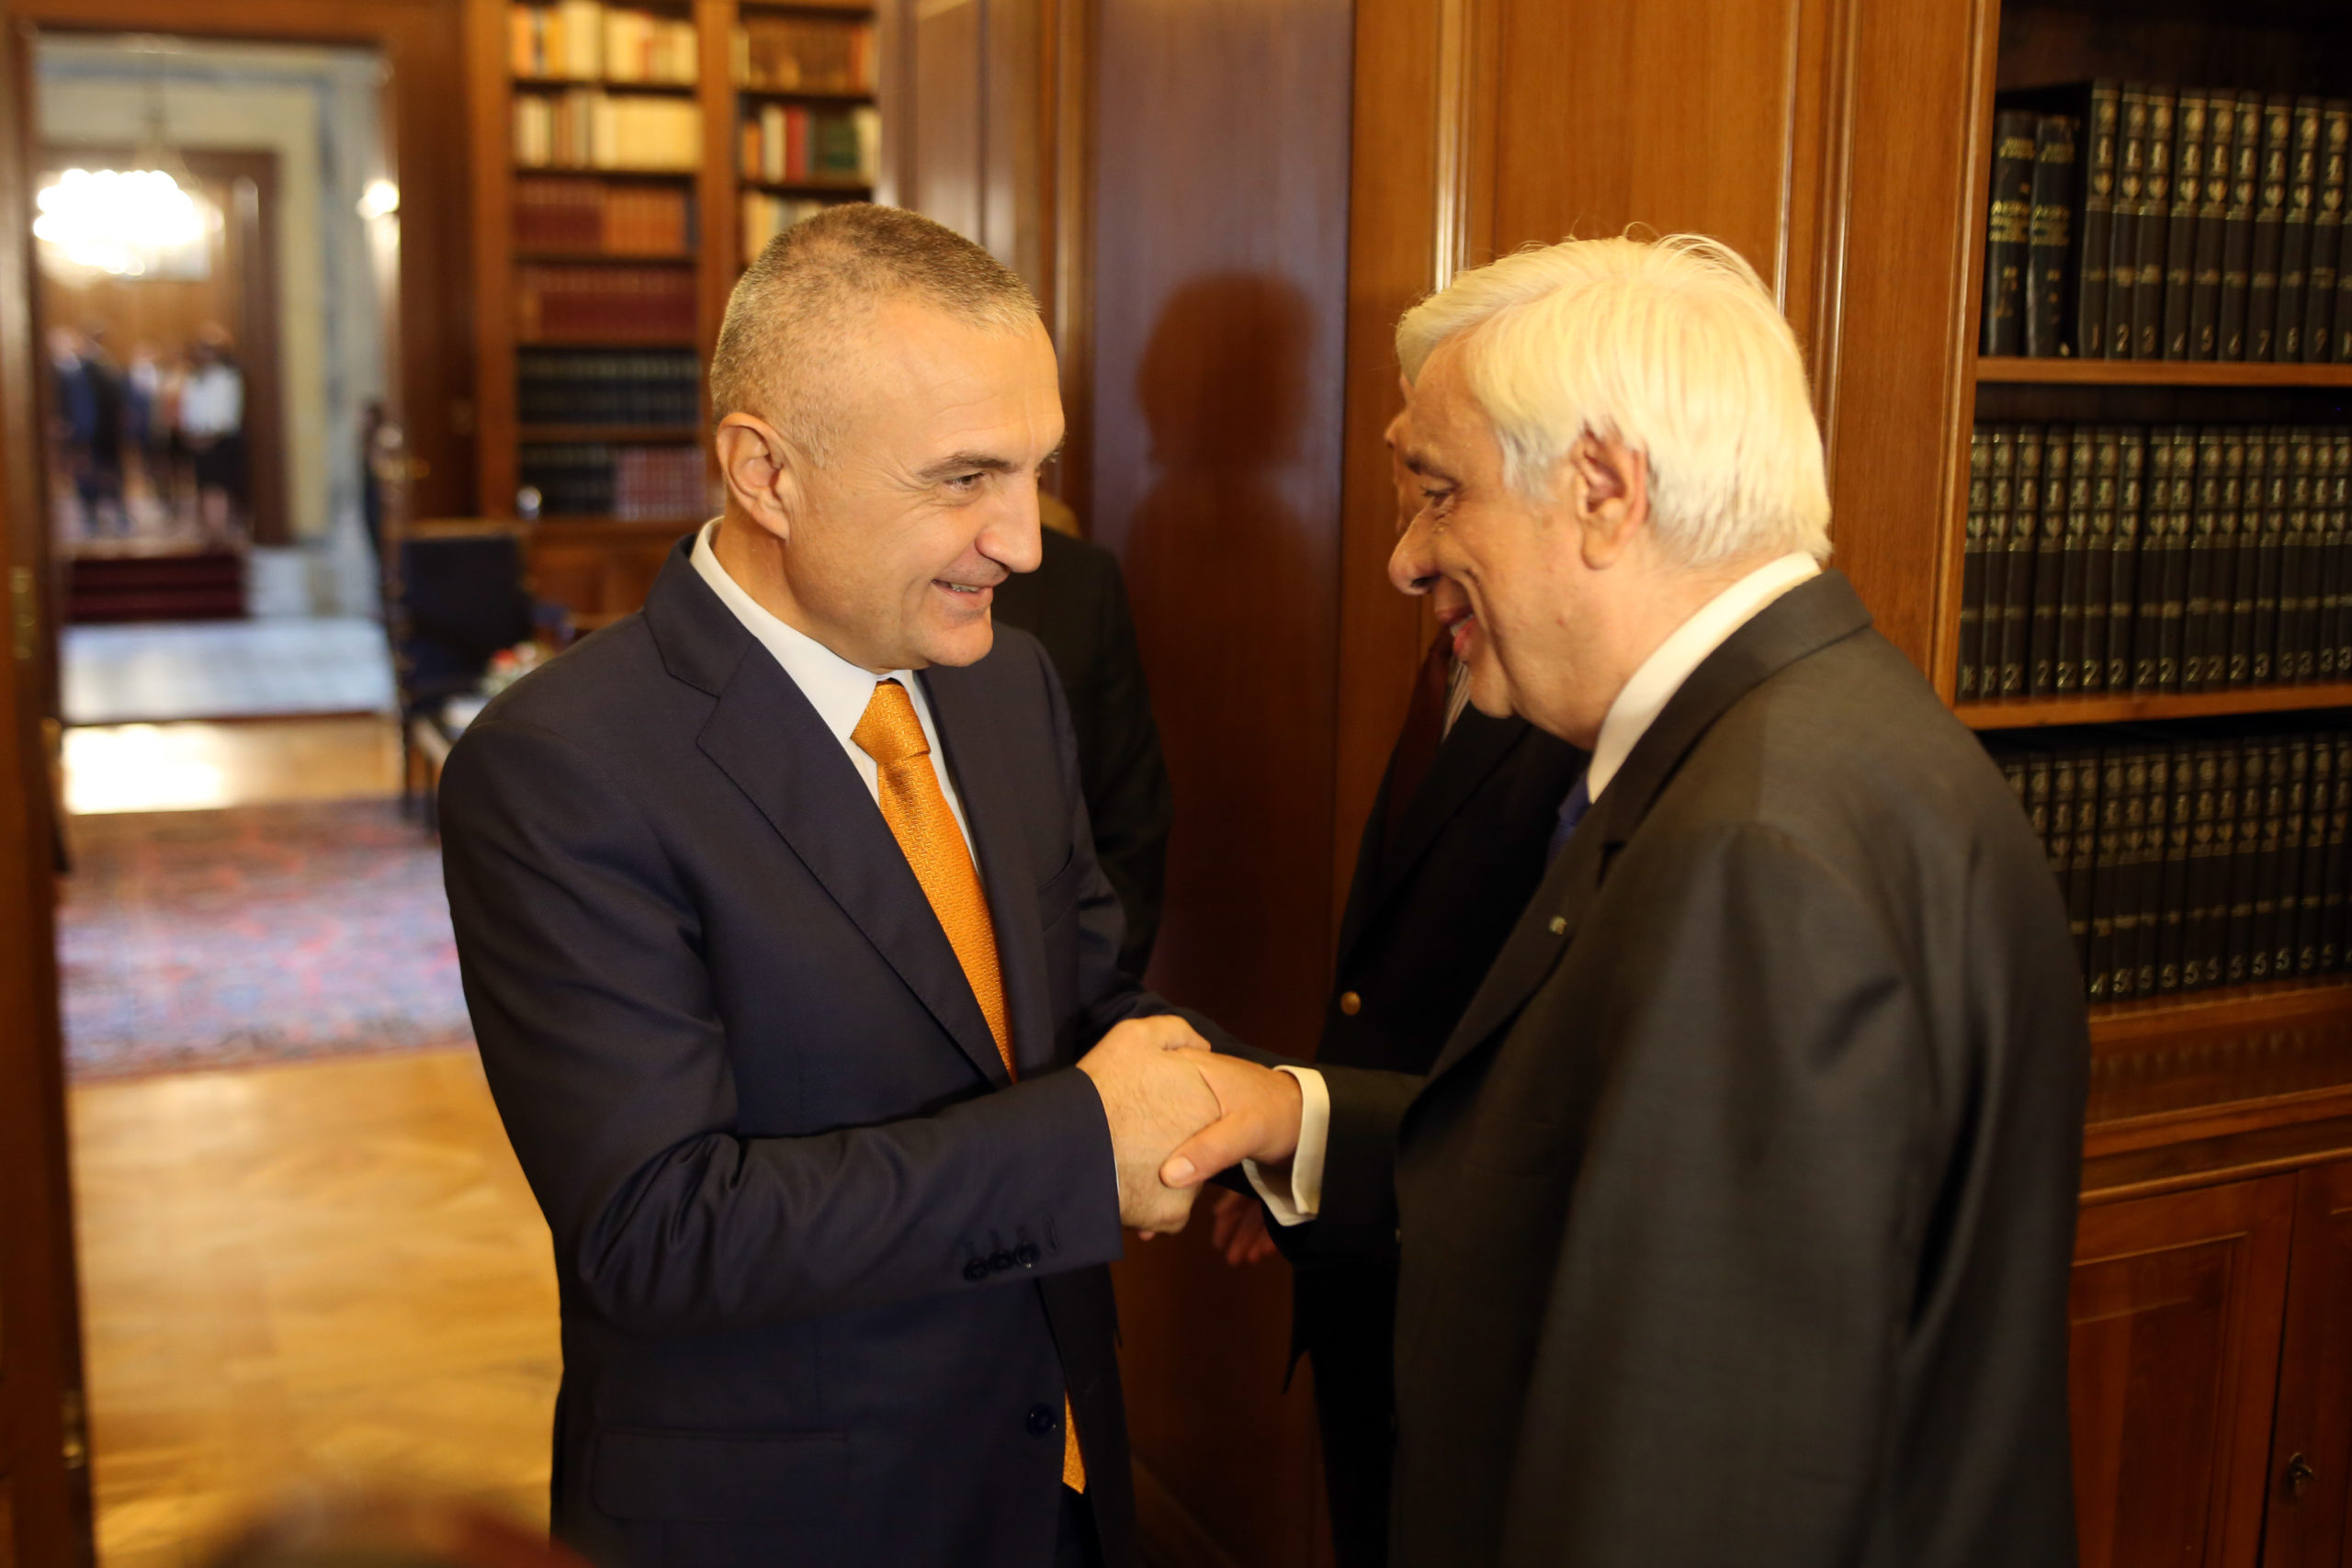 Σε φιλικό κλίμα η συνάντηση του Παυλόπουλου με τον Πρόεδρο του αλβανικού Κοινοβουλίου